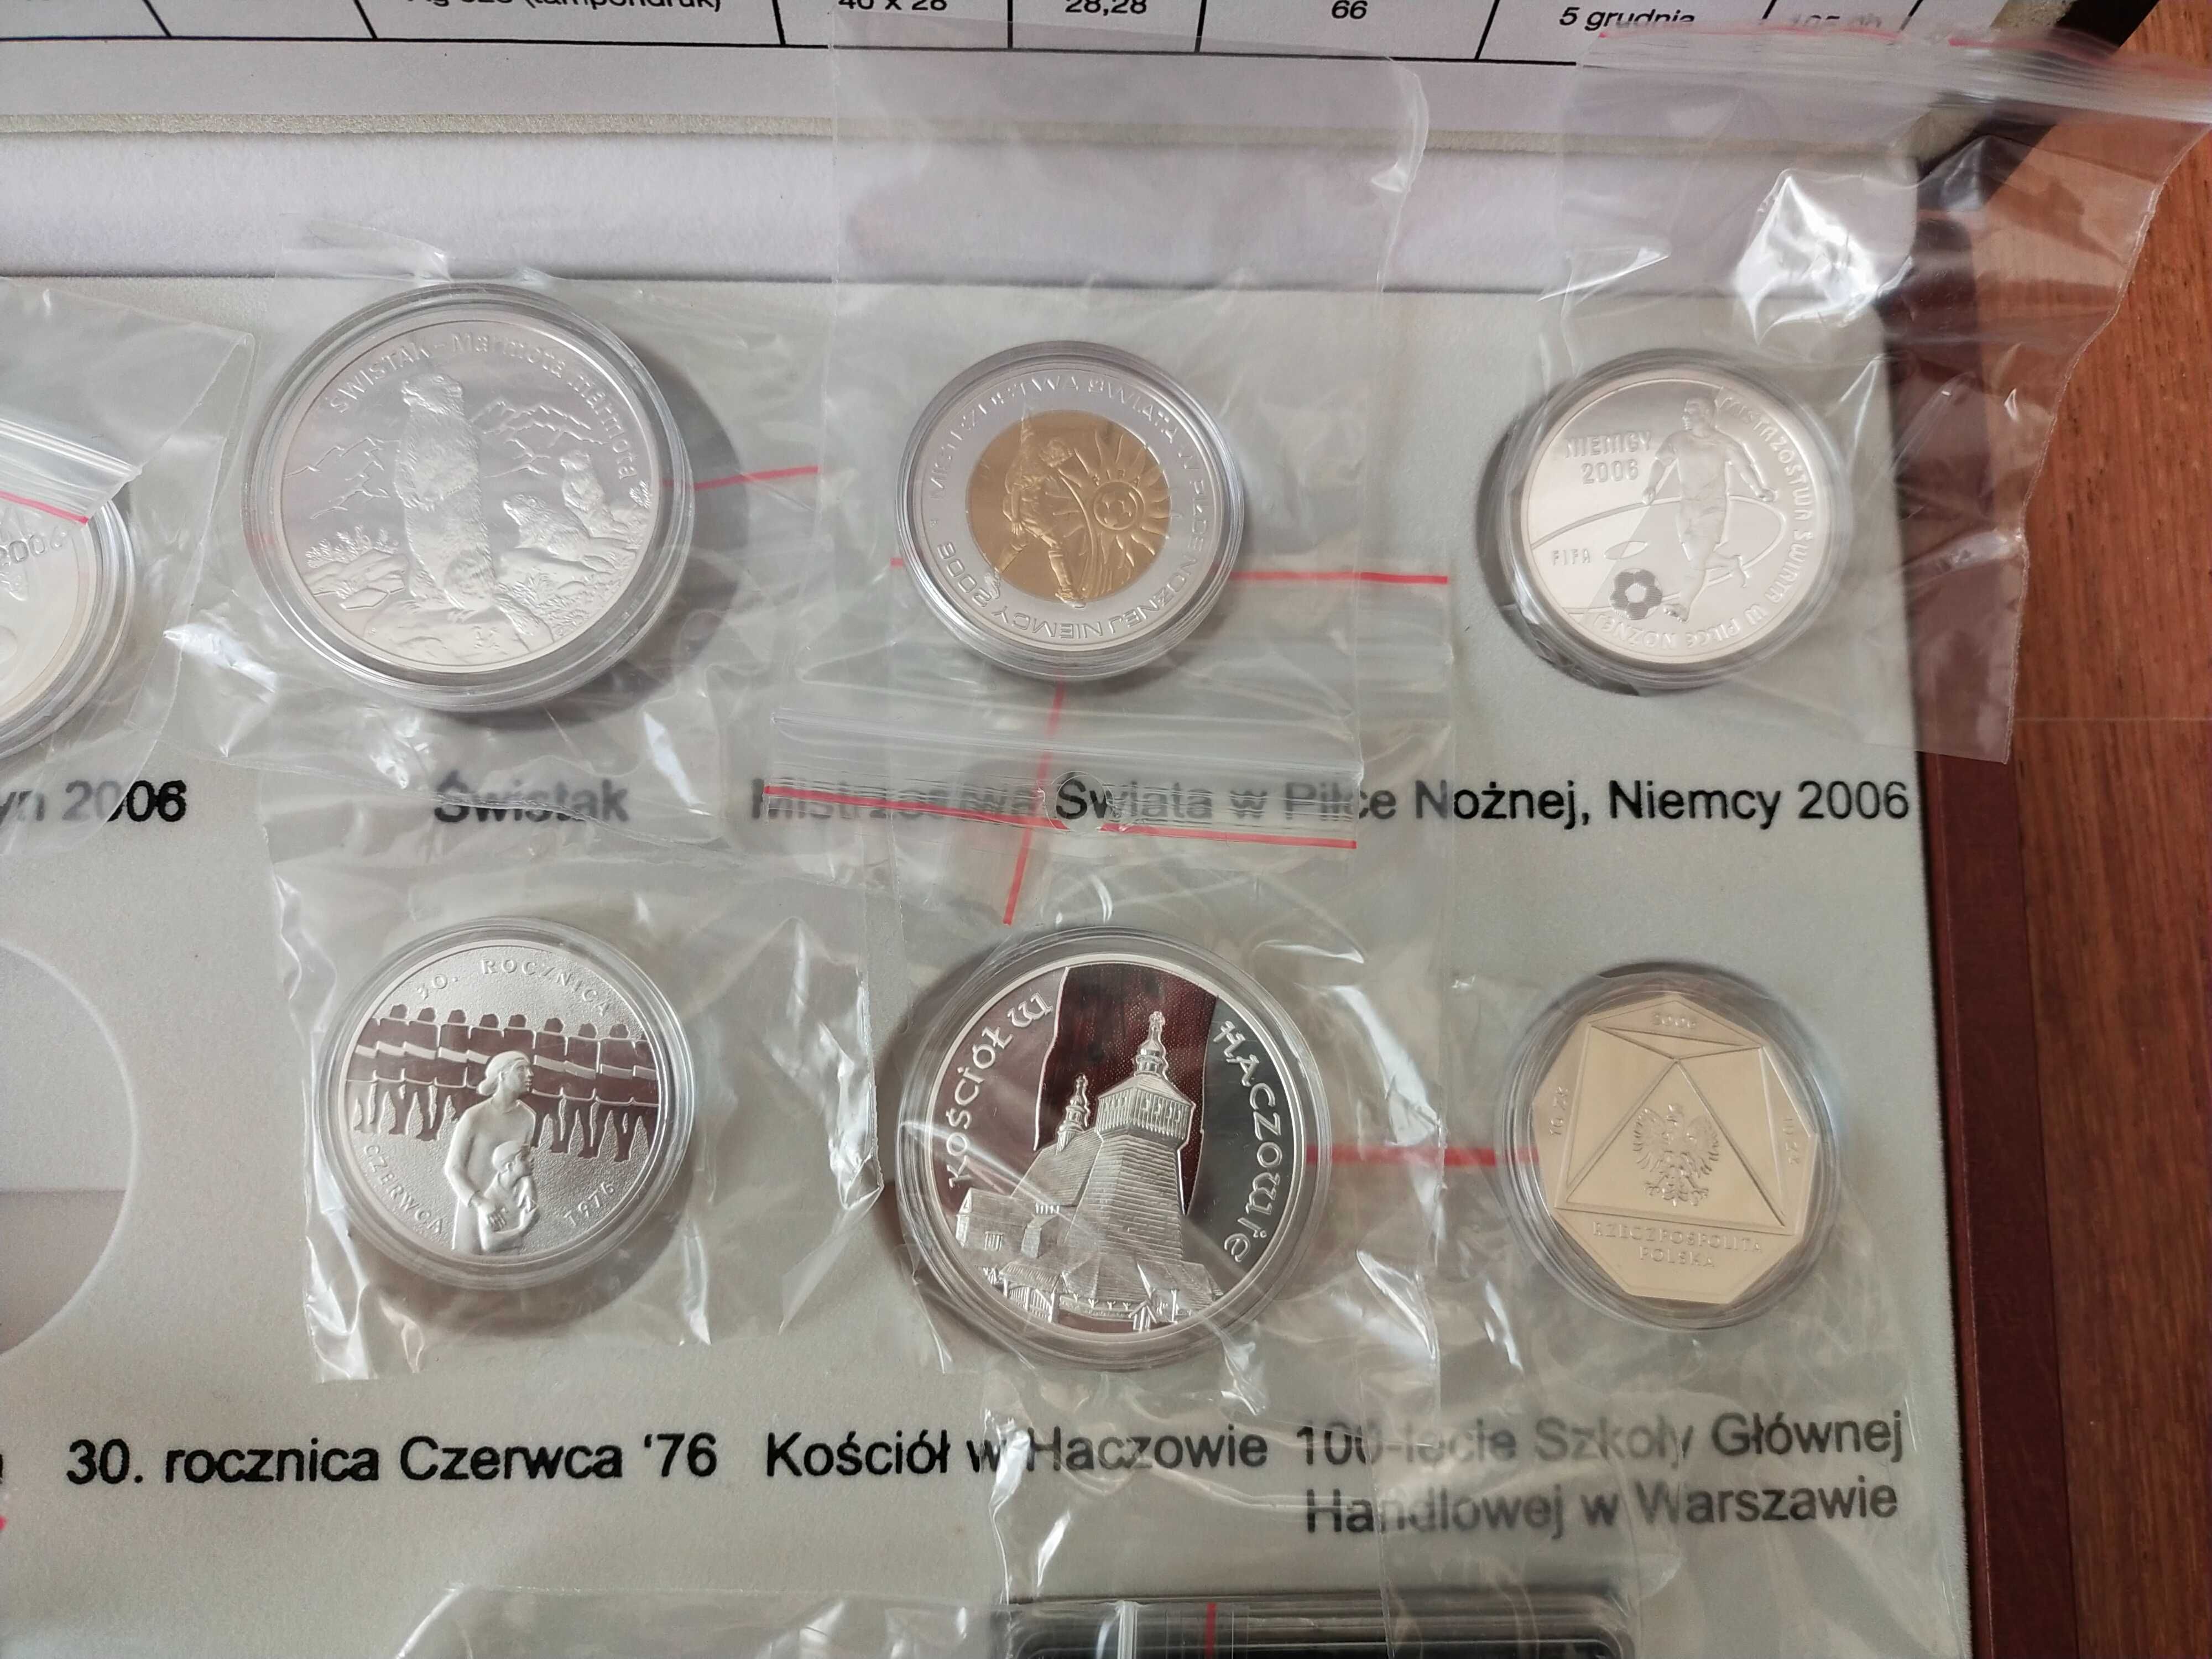 Zestaw srebrnych monet kolekcjonerskich emisja 2006 roku.